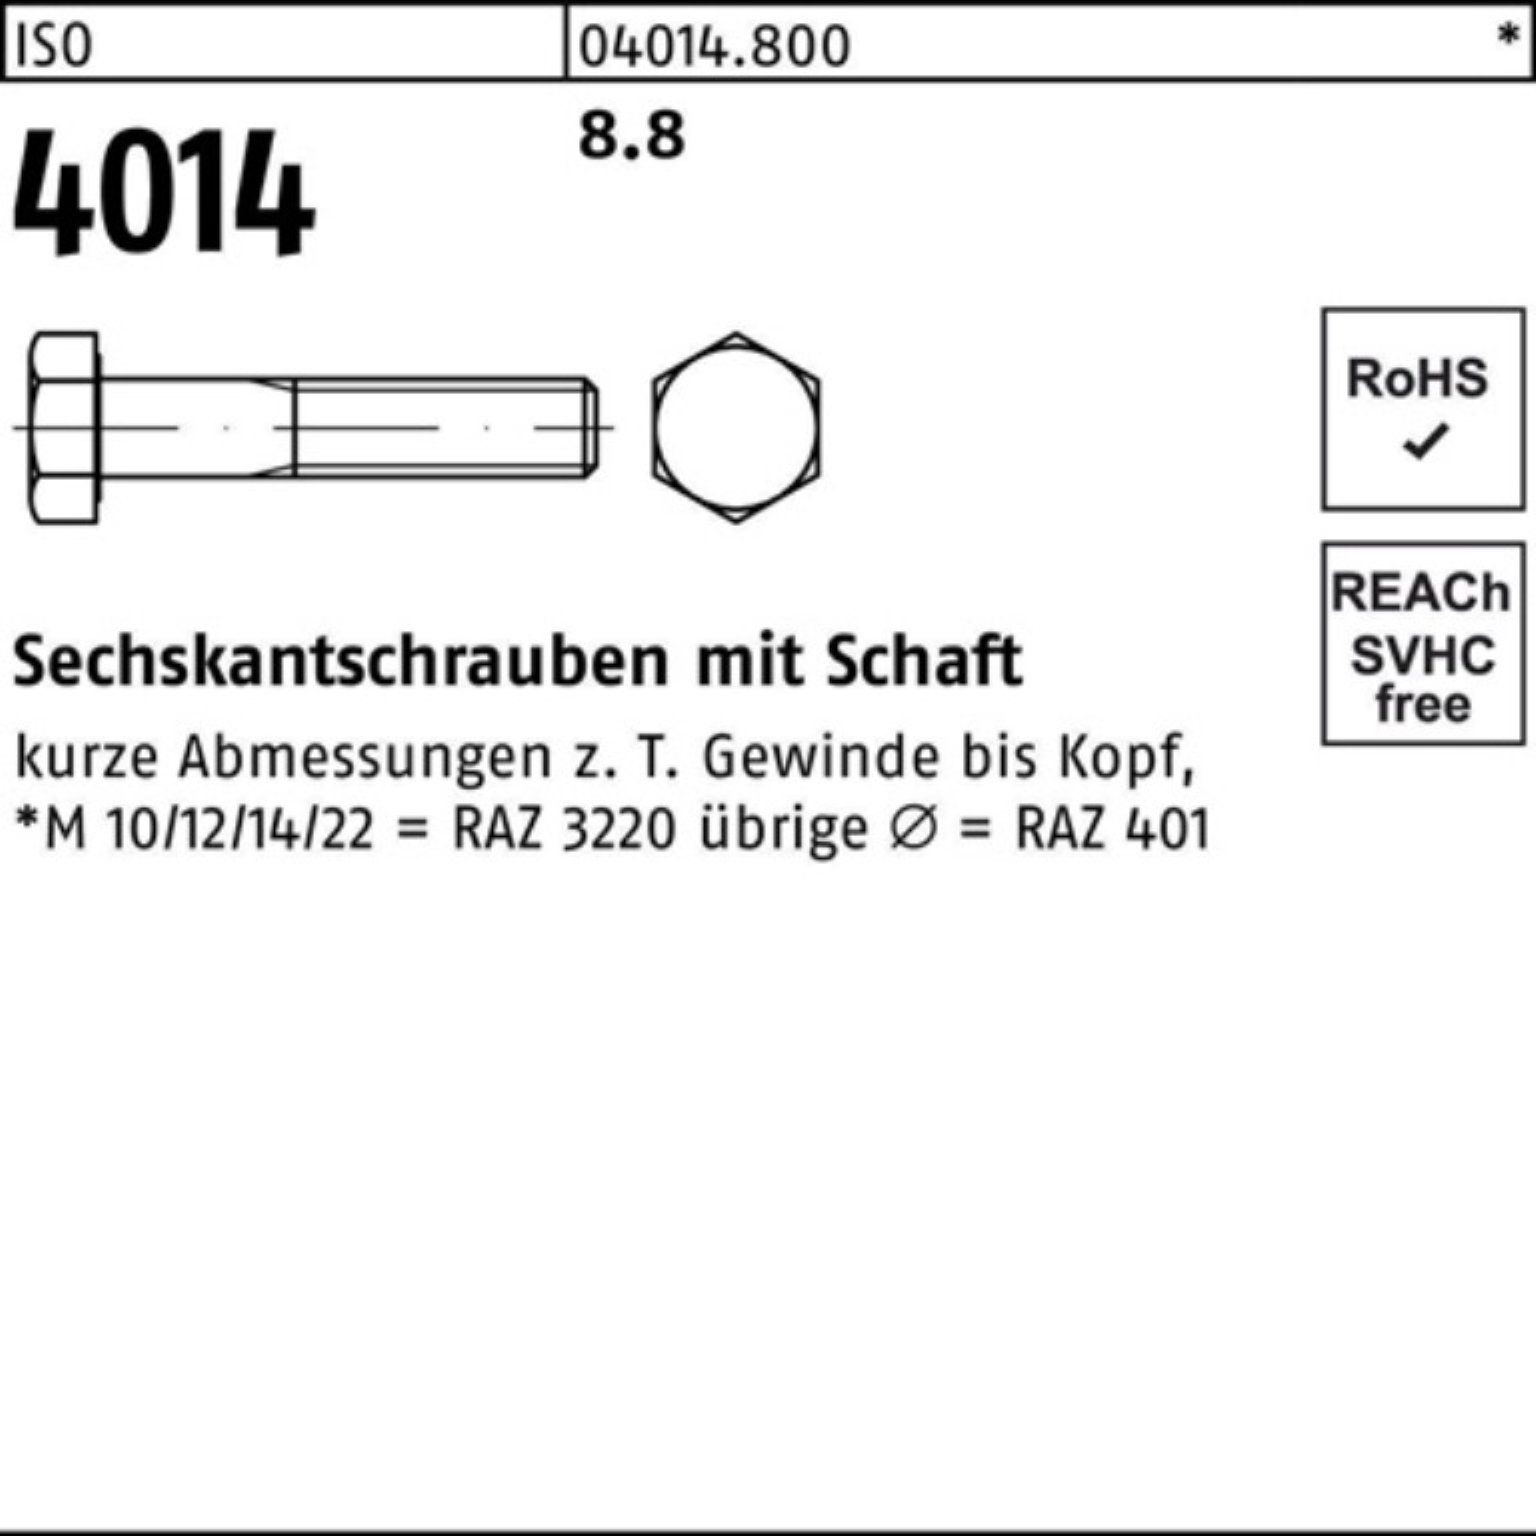 Sechskantschraube Bufab Sechskantschraube 8.8 Schaft Stück 25 Pack M16x 4014 100er ISO 230 IS